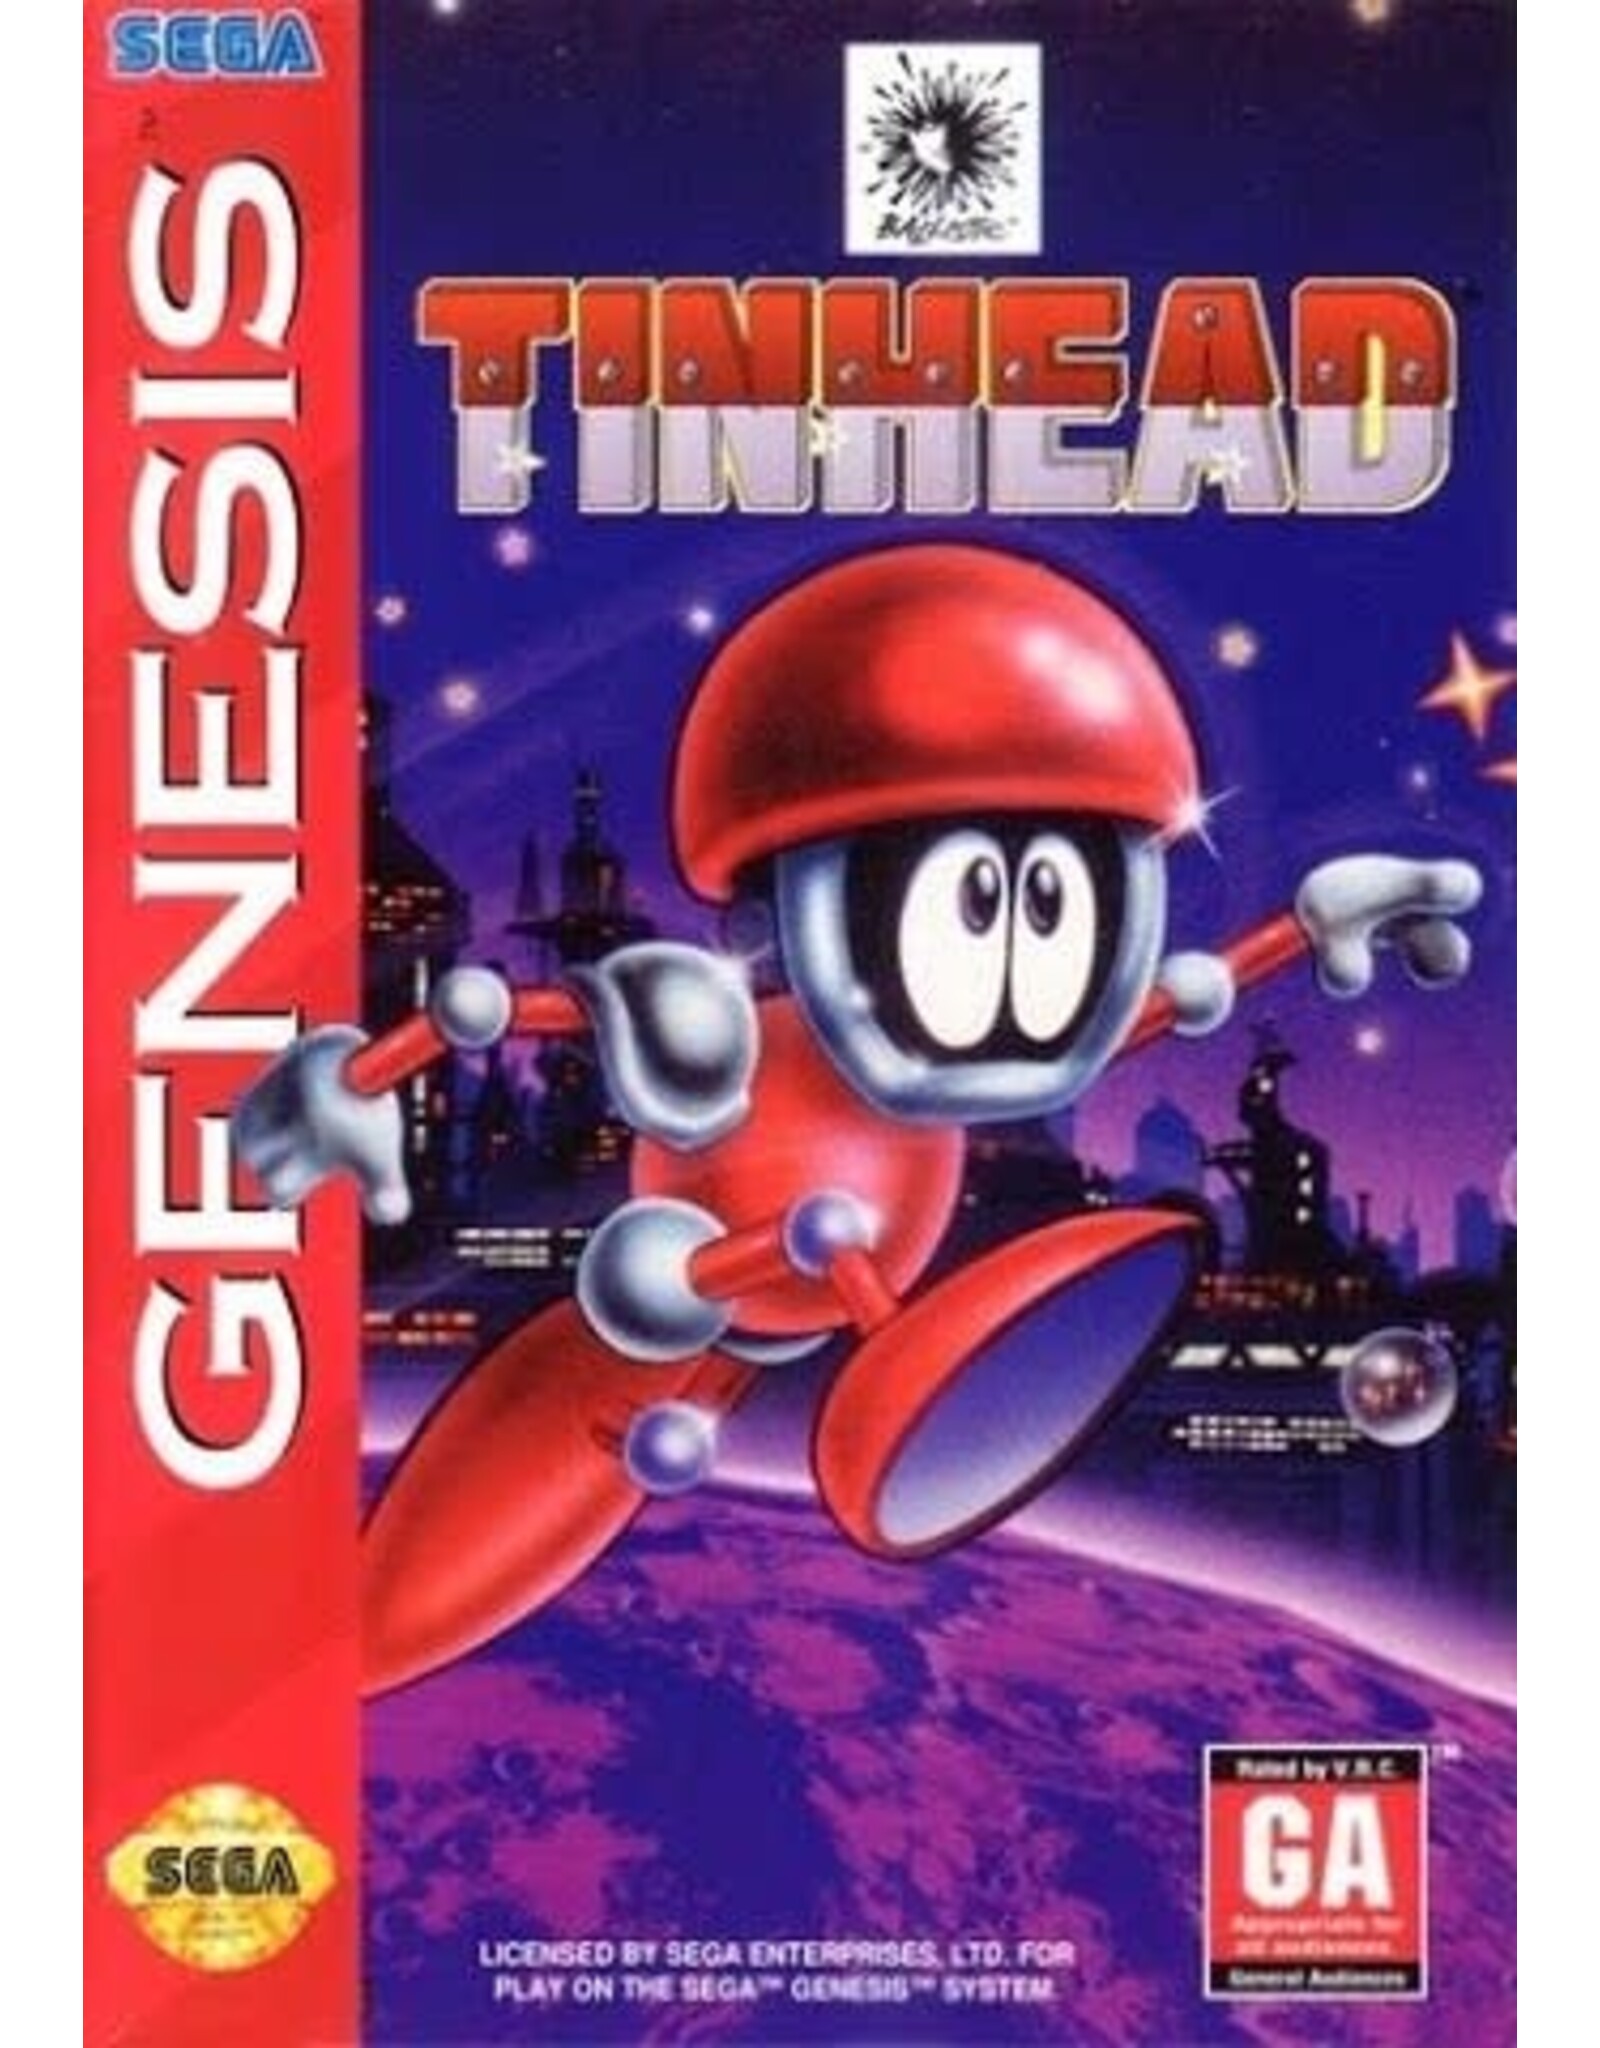 Sega Genesis Tinhead (CiB)